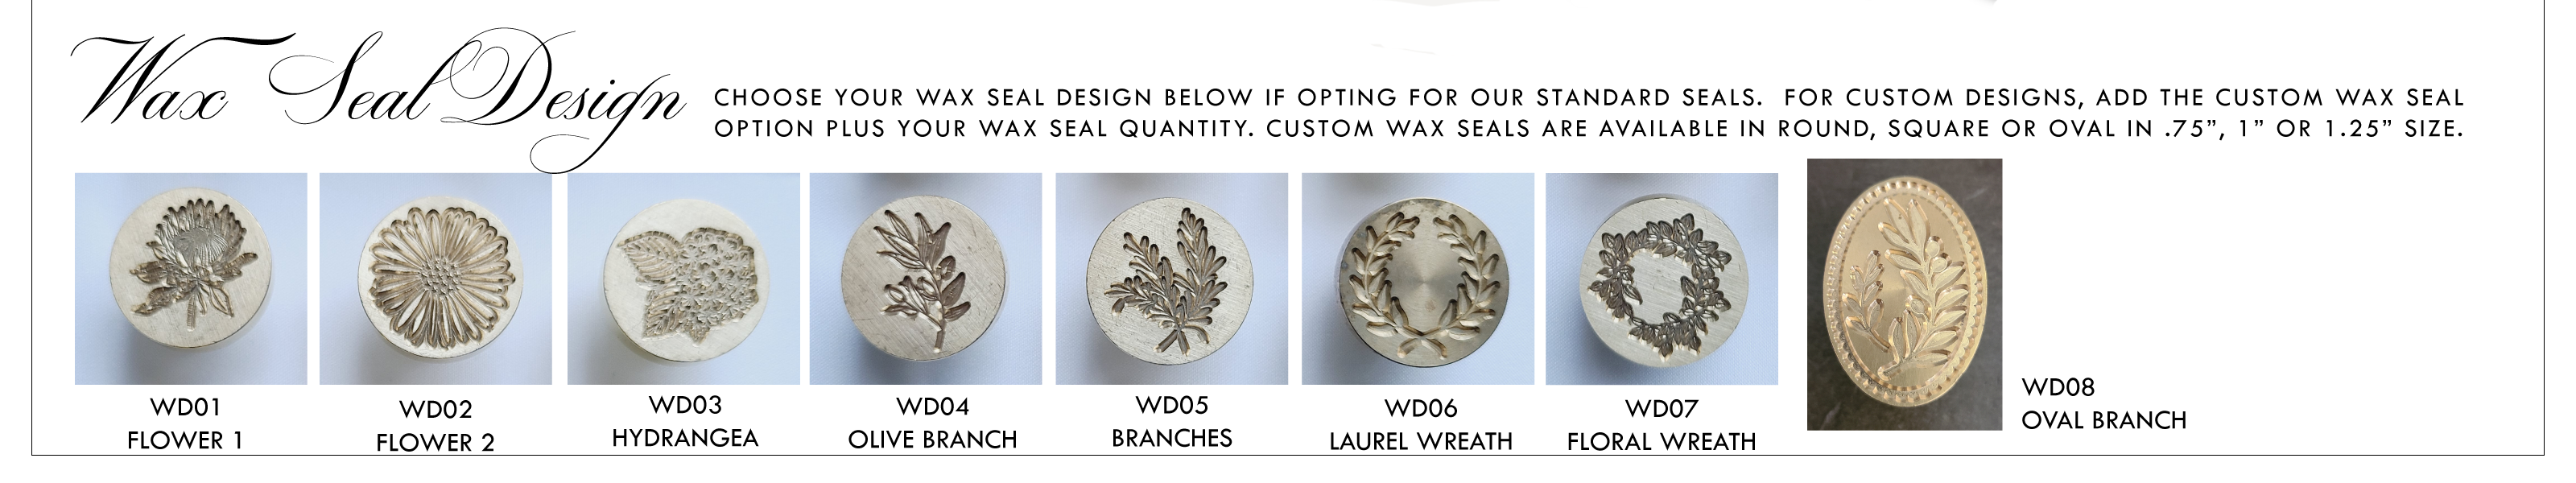 studio wax seal design options